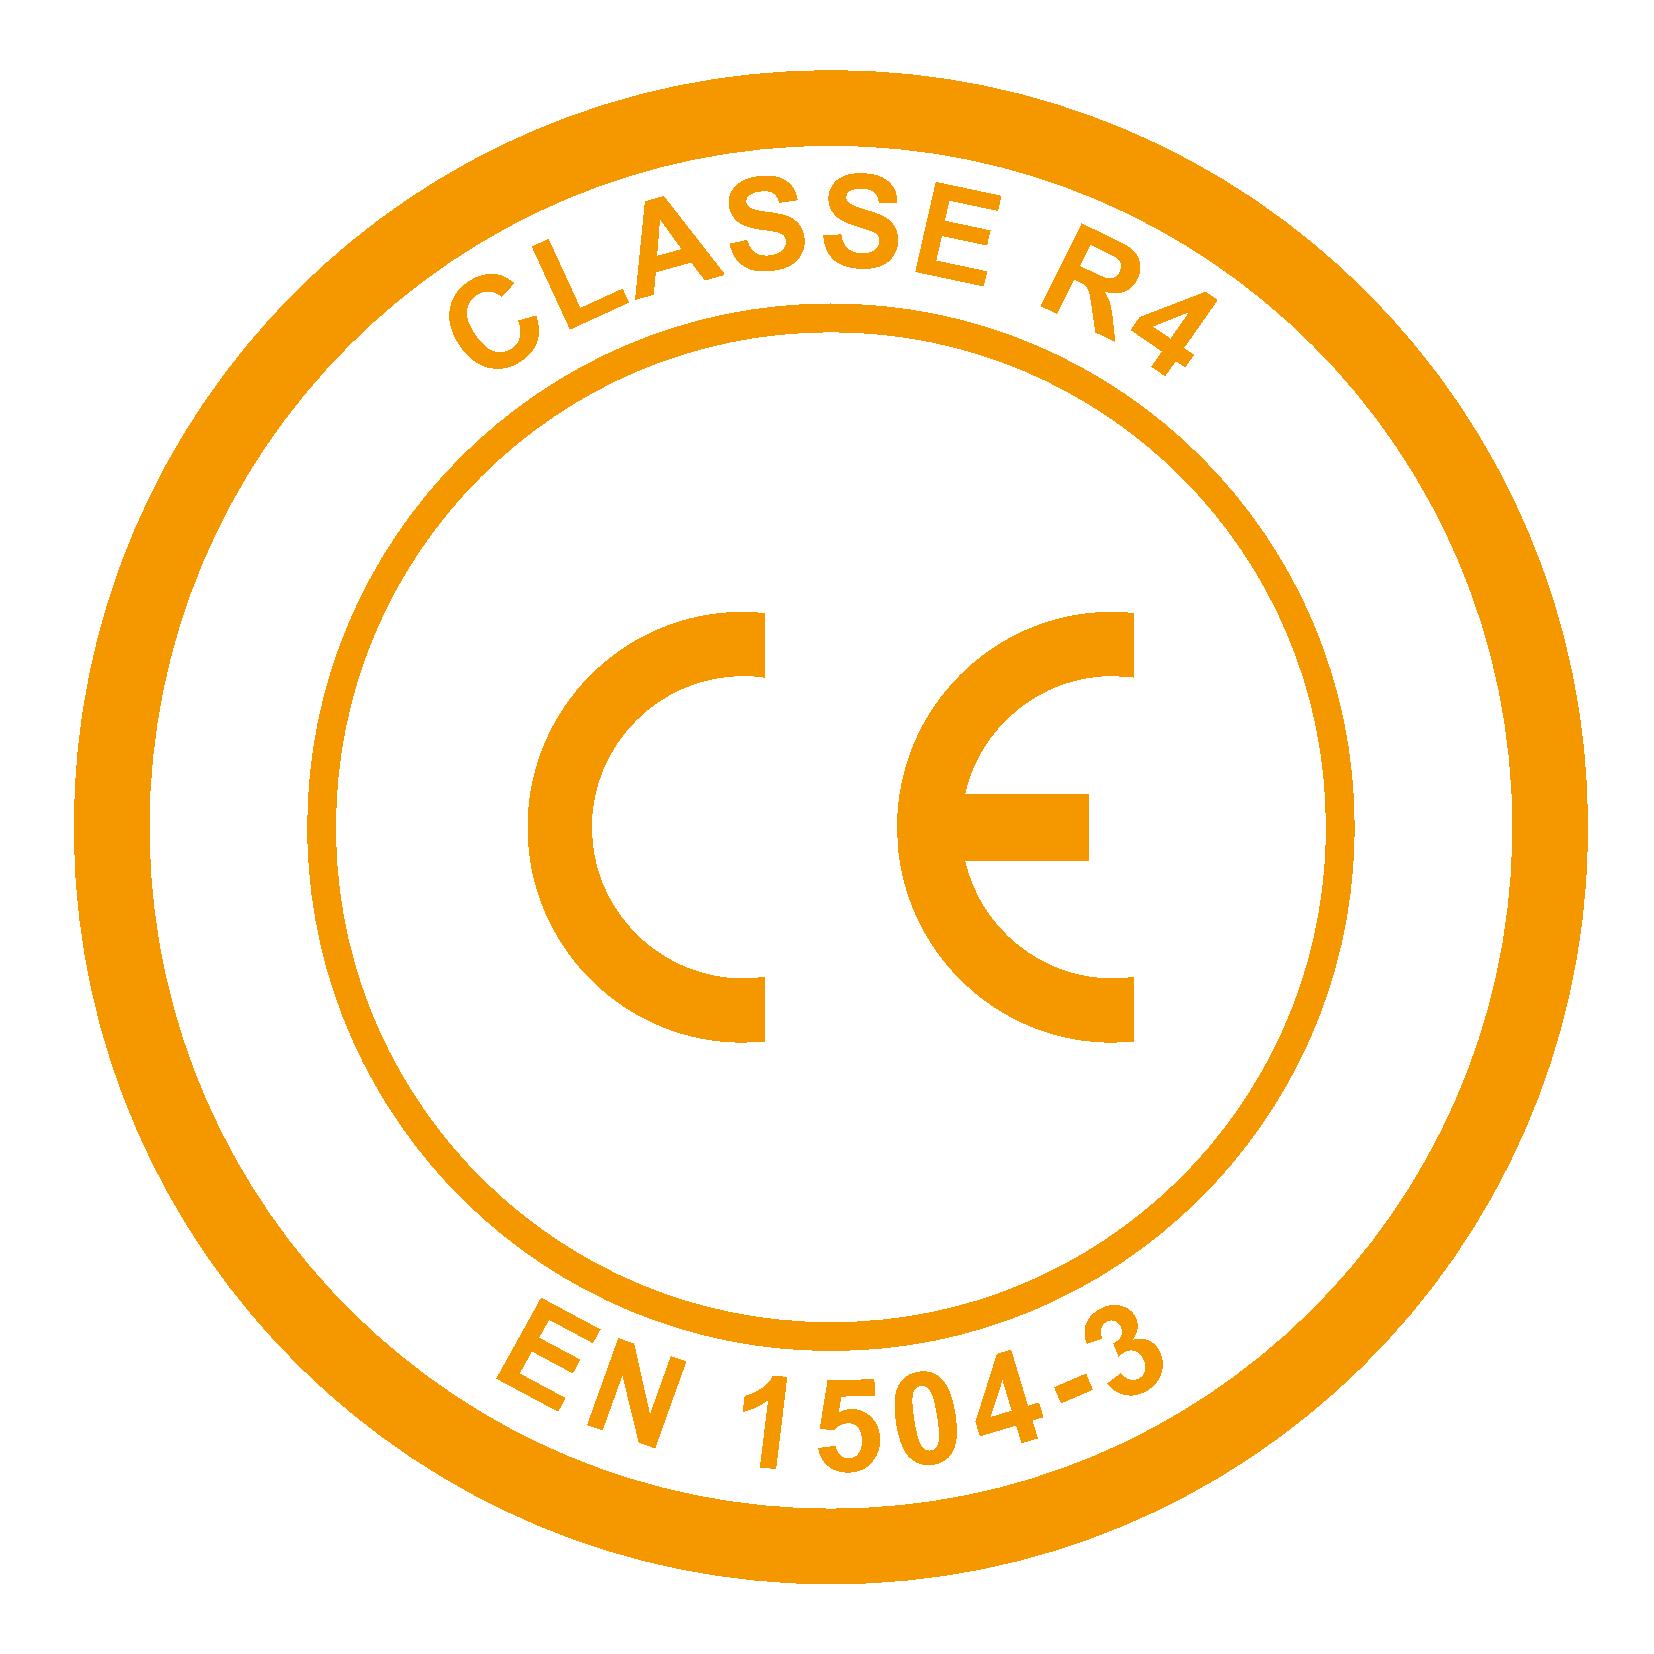 Classe R4 (EN 1504-3)